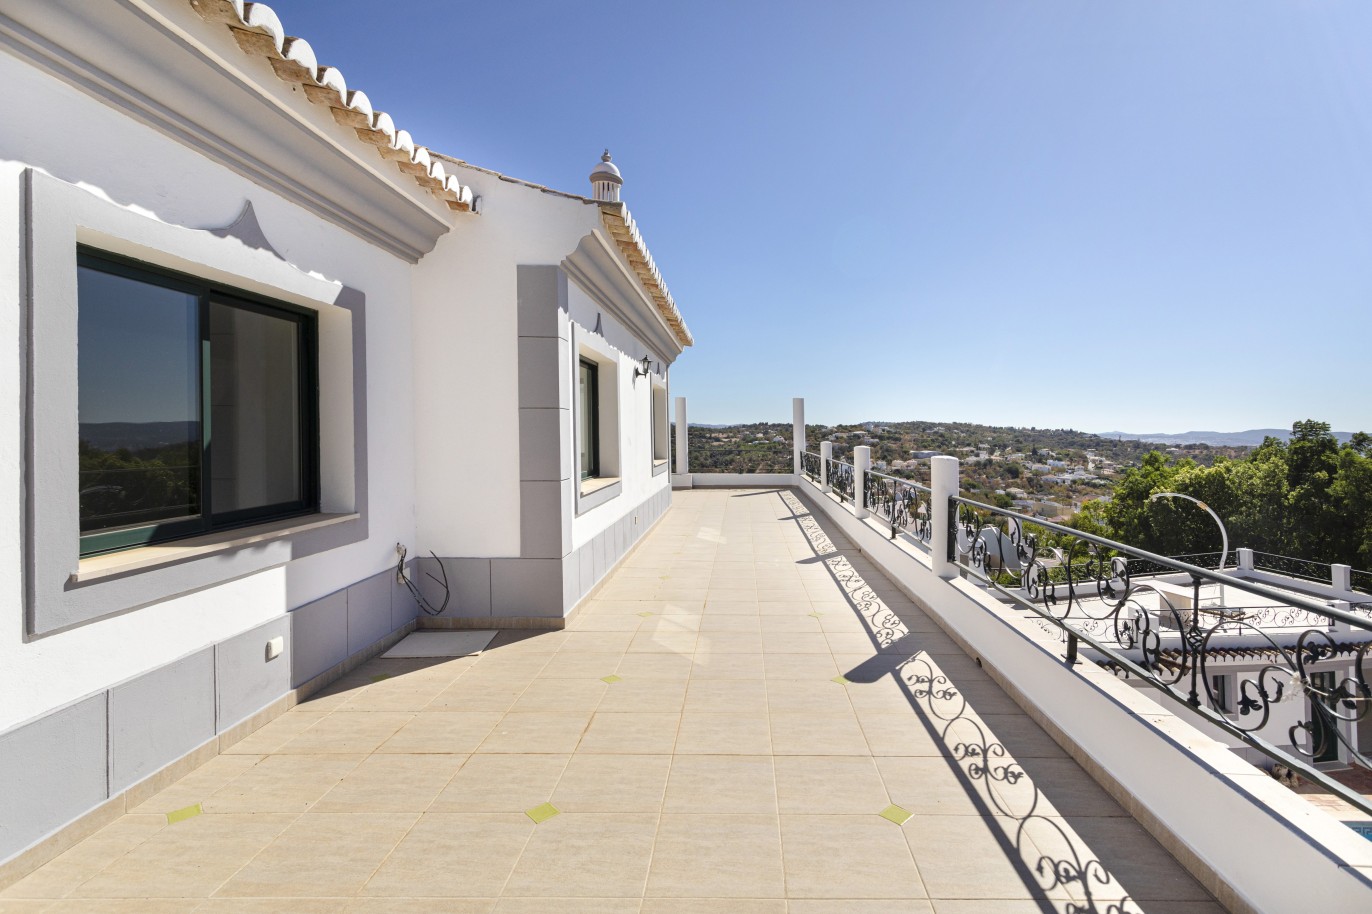 Piso en venta, piscina, vista mar y montaña, Loulé, Algarve, Portugal_236419